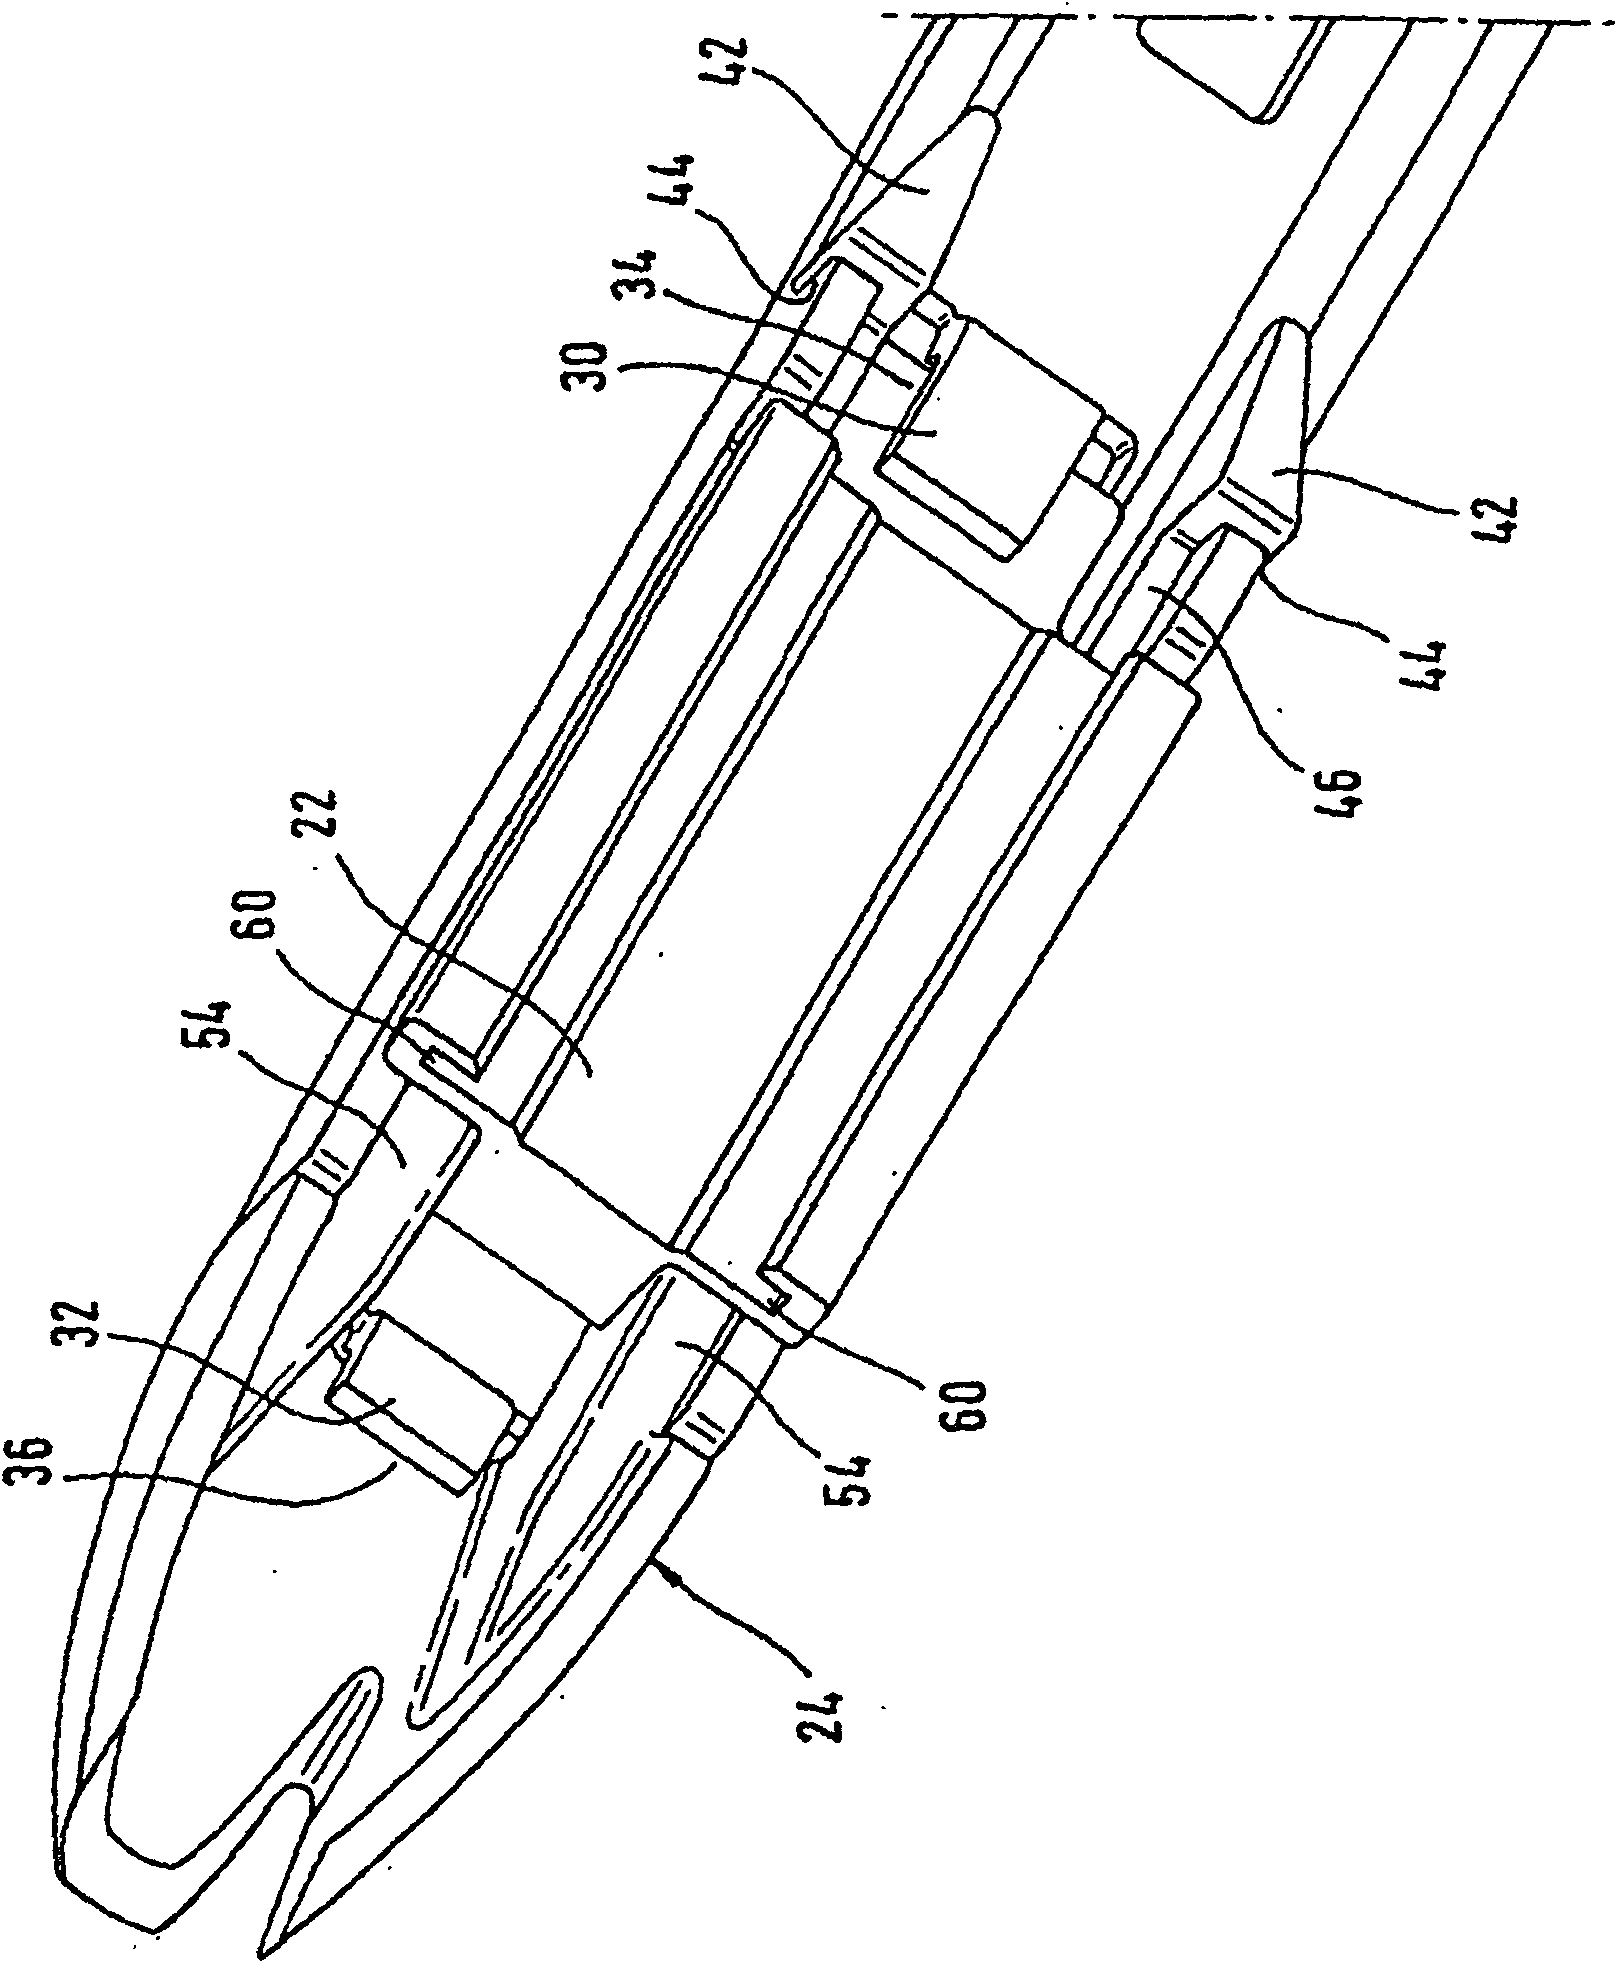 Wiper device comprising a flat wiper blade and wiper arm